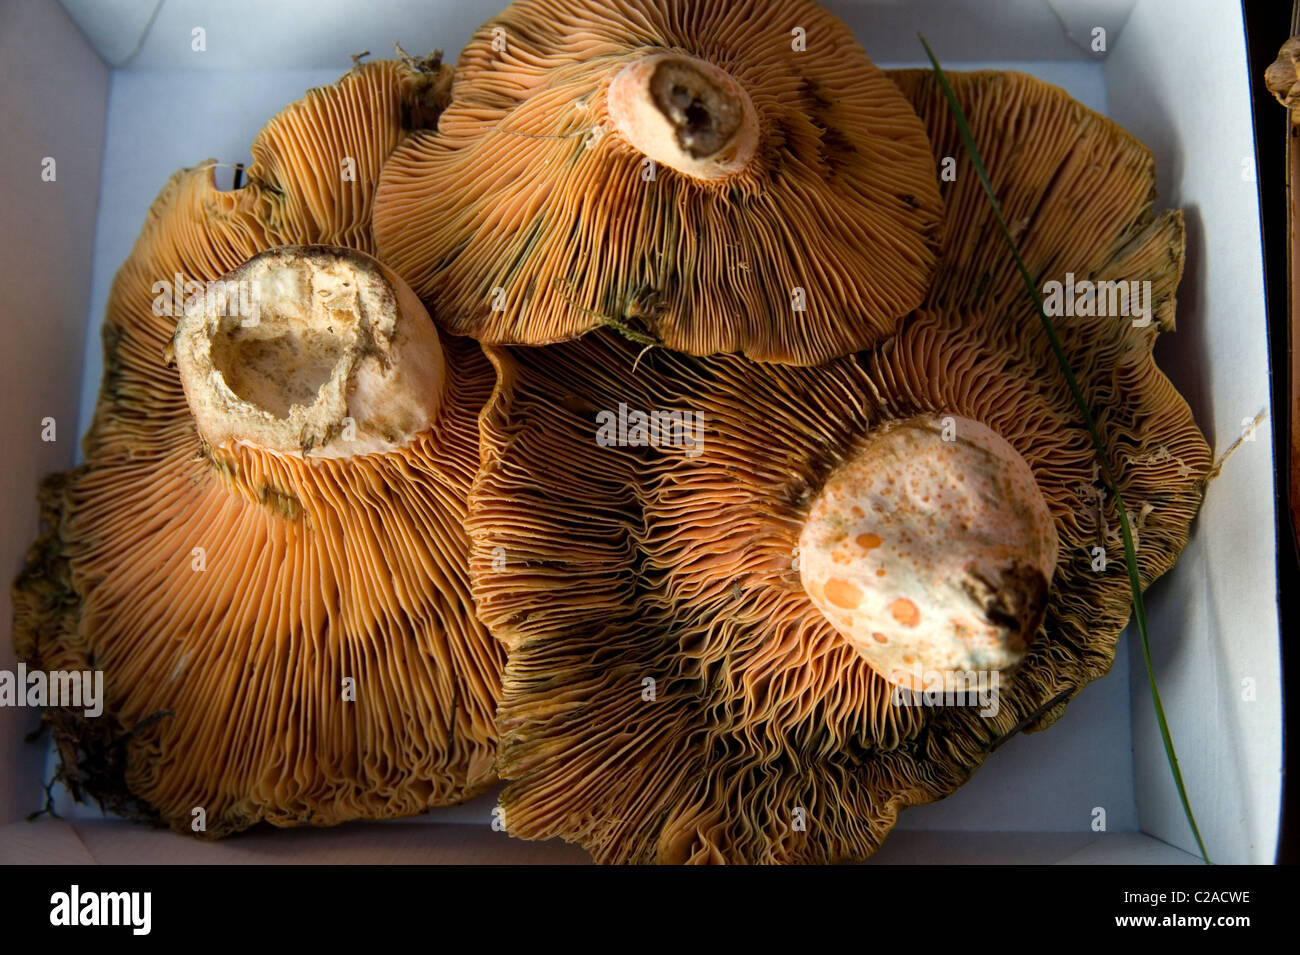 pine field mushrooms Lactarius delicious Safron milk cap Stock Photo